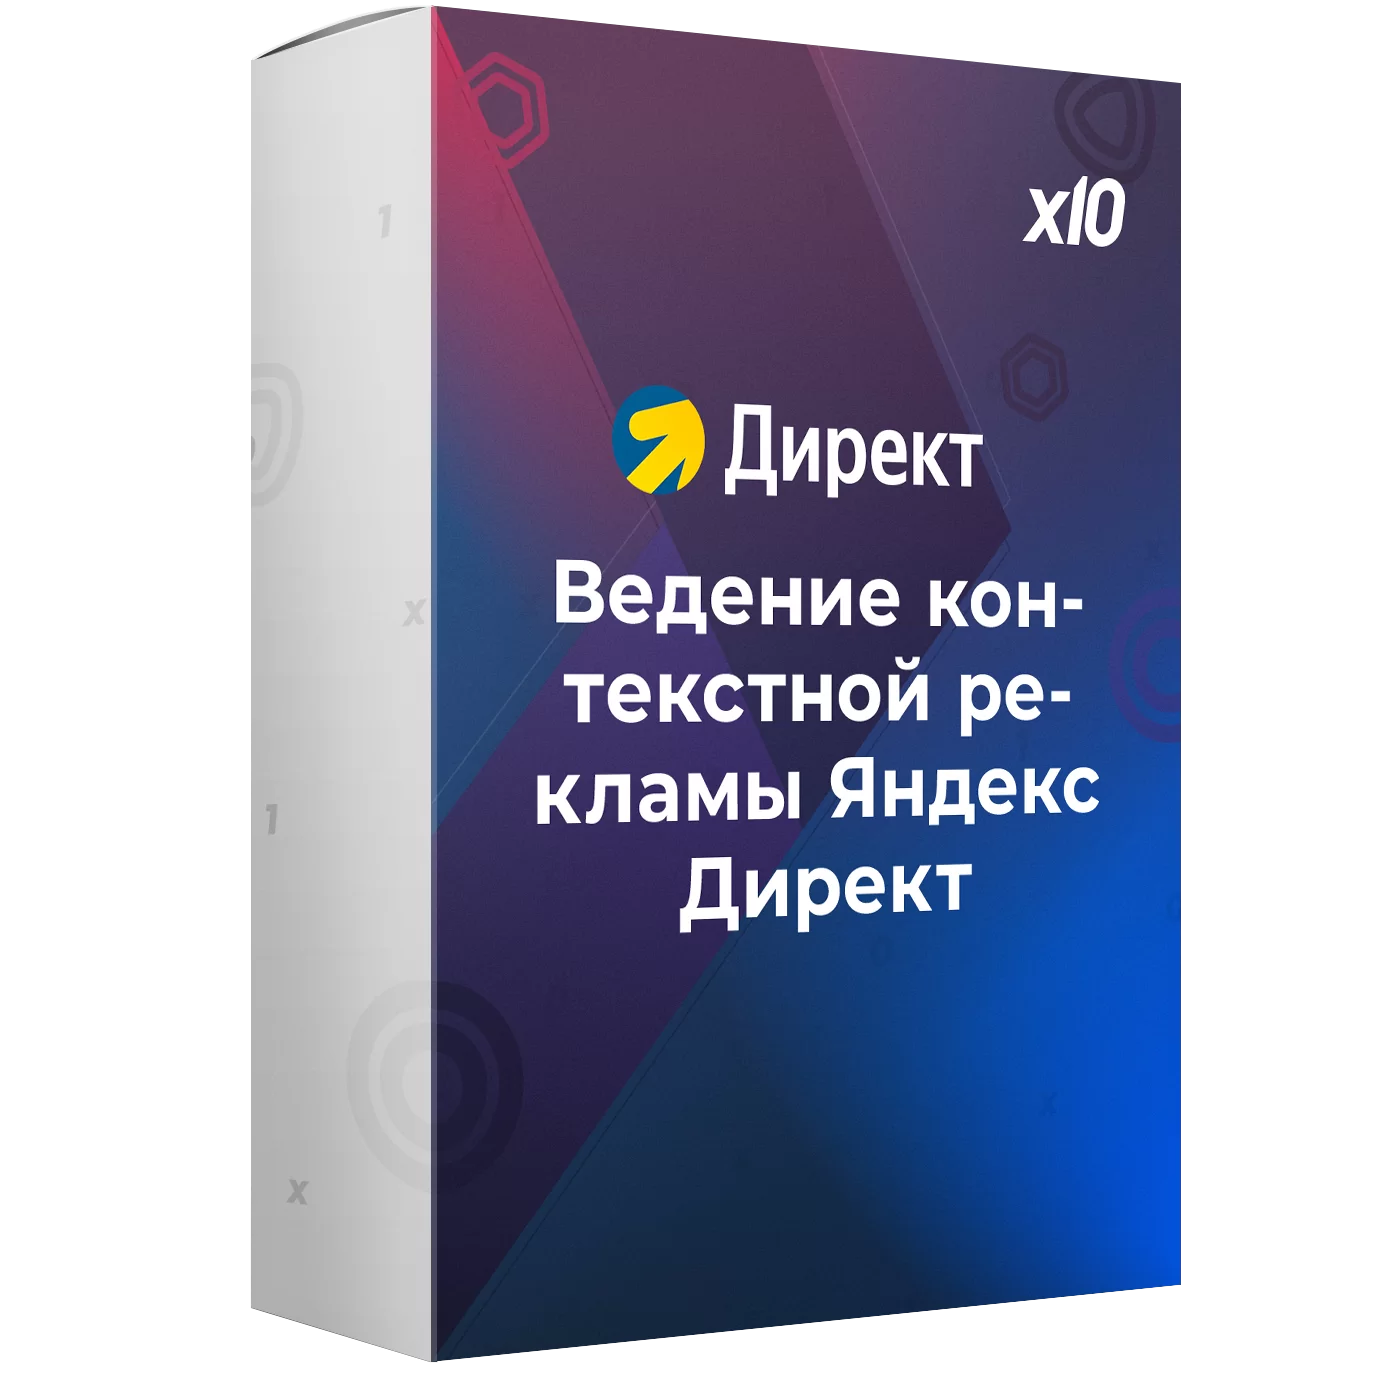 Ведение контекстной рекламы Яндекс Директ (Поиск + РСЯ)